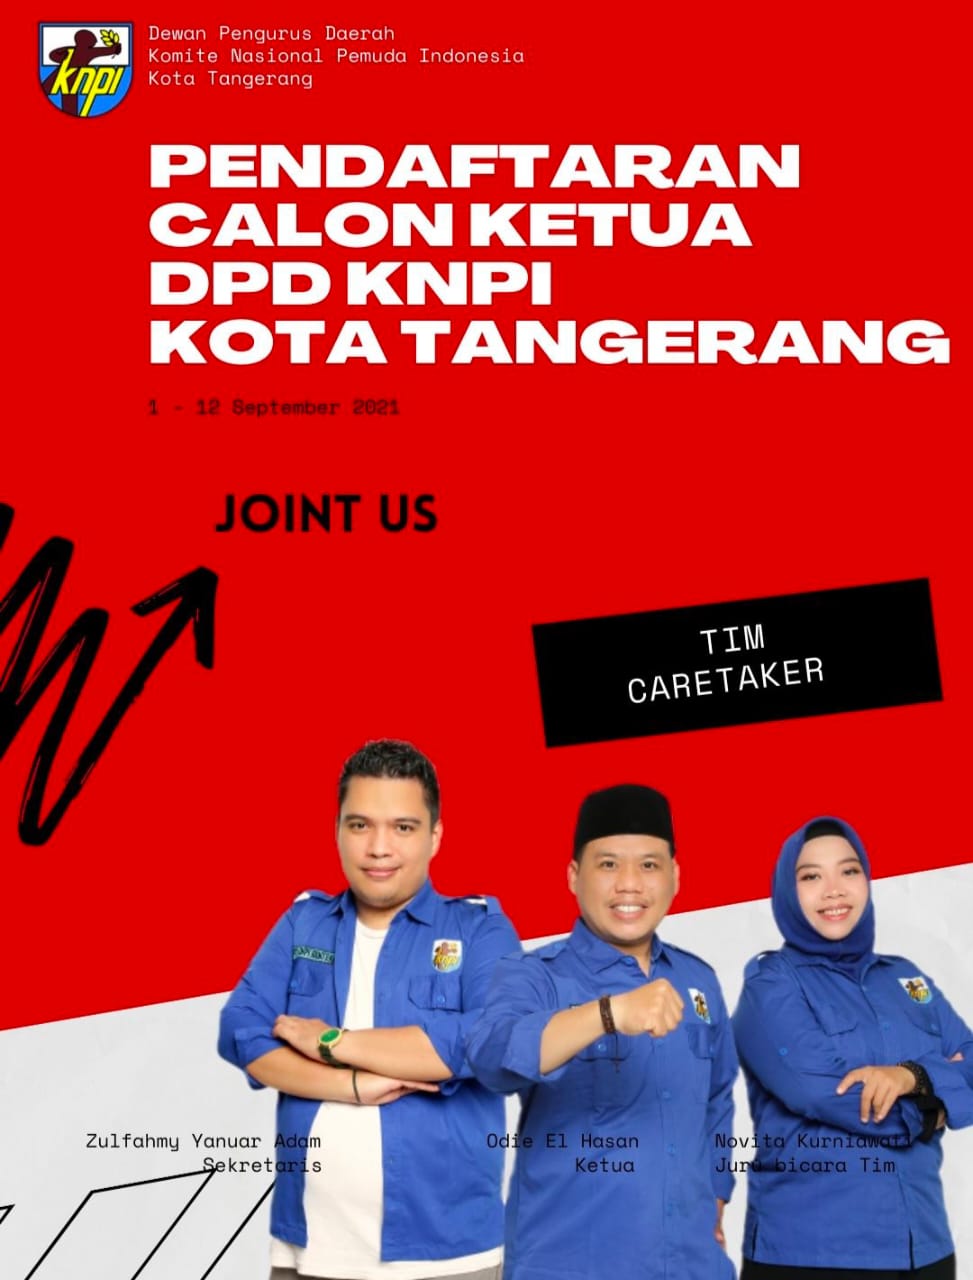 Gambar Pendaftaran Calon Ketua DPD KNPI Kota Tangerang Dibuka Mulai Hari Ini 37